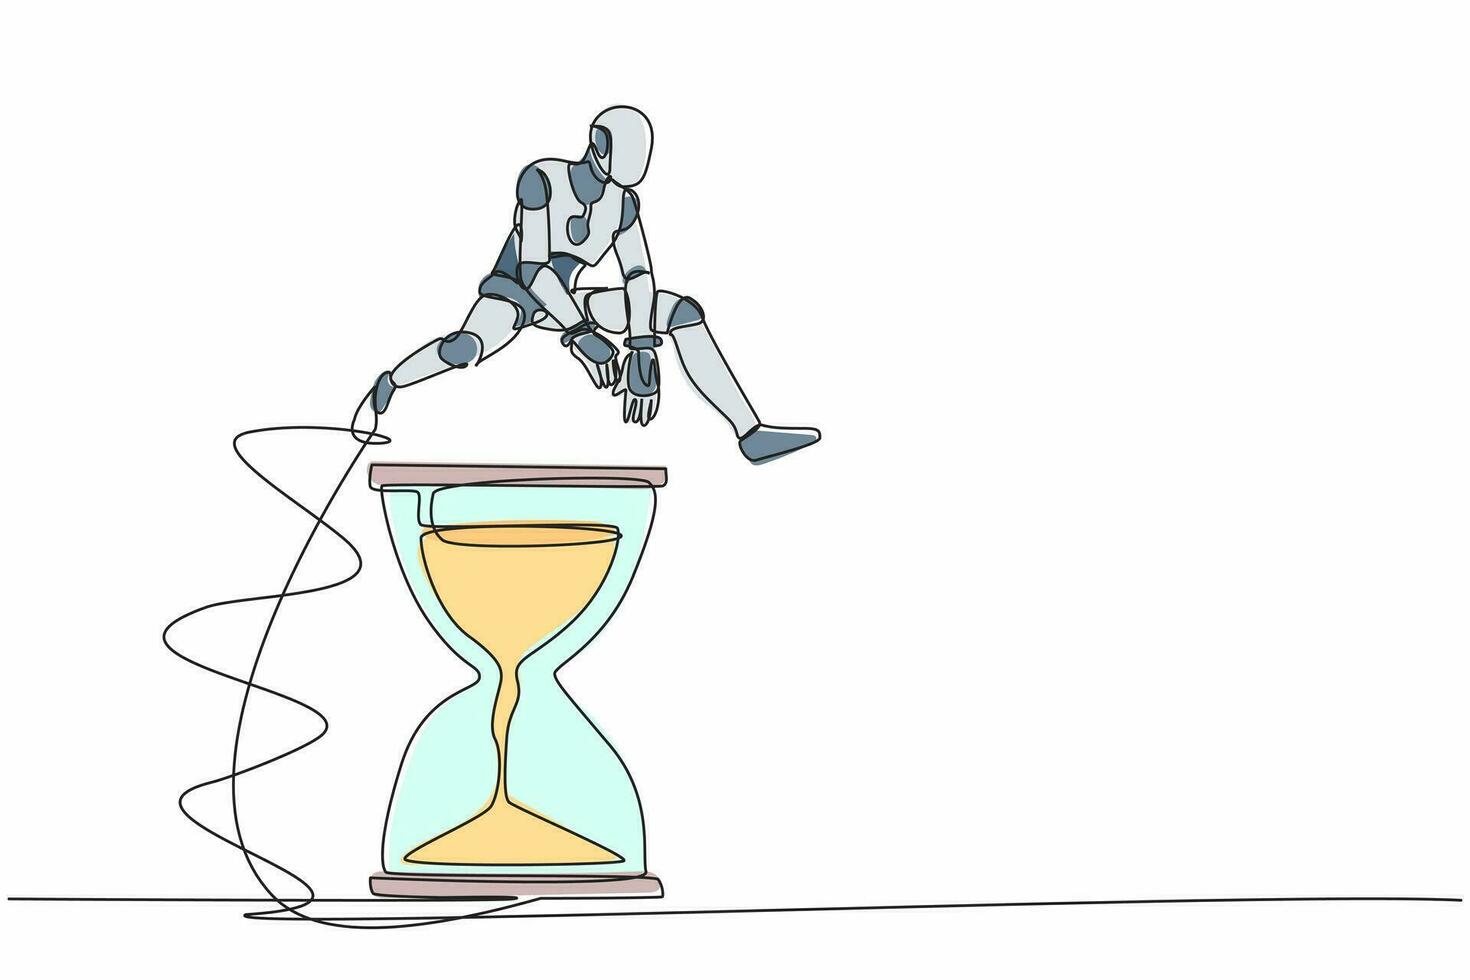 robot de dibujo de una sola línea continua saltando sobre el reloj de arena. concepto de programación de negocios y gestión del tiempo. Inteligencia artificial robótica moderna. ilustración de vector de diseño gráfico de dibujo de una línea